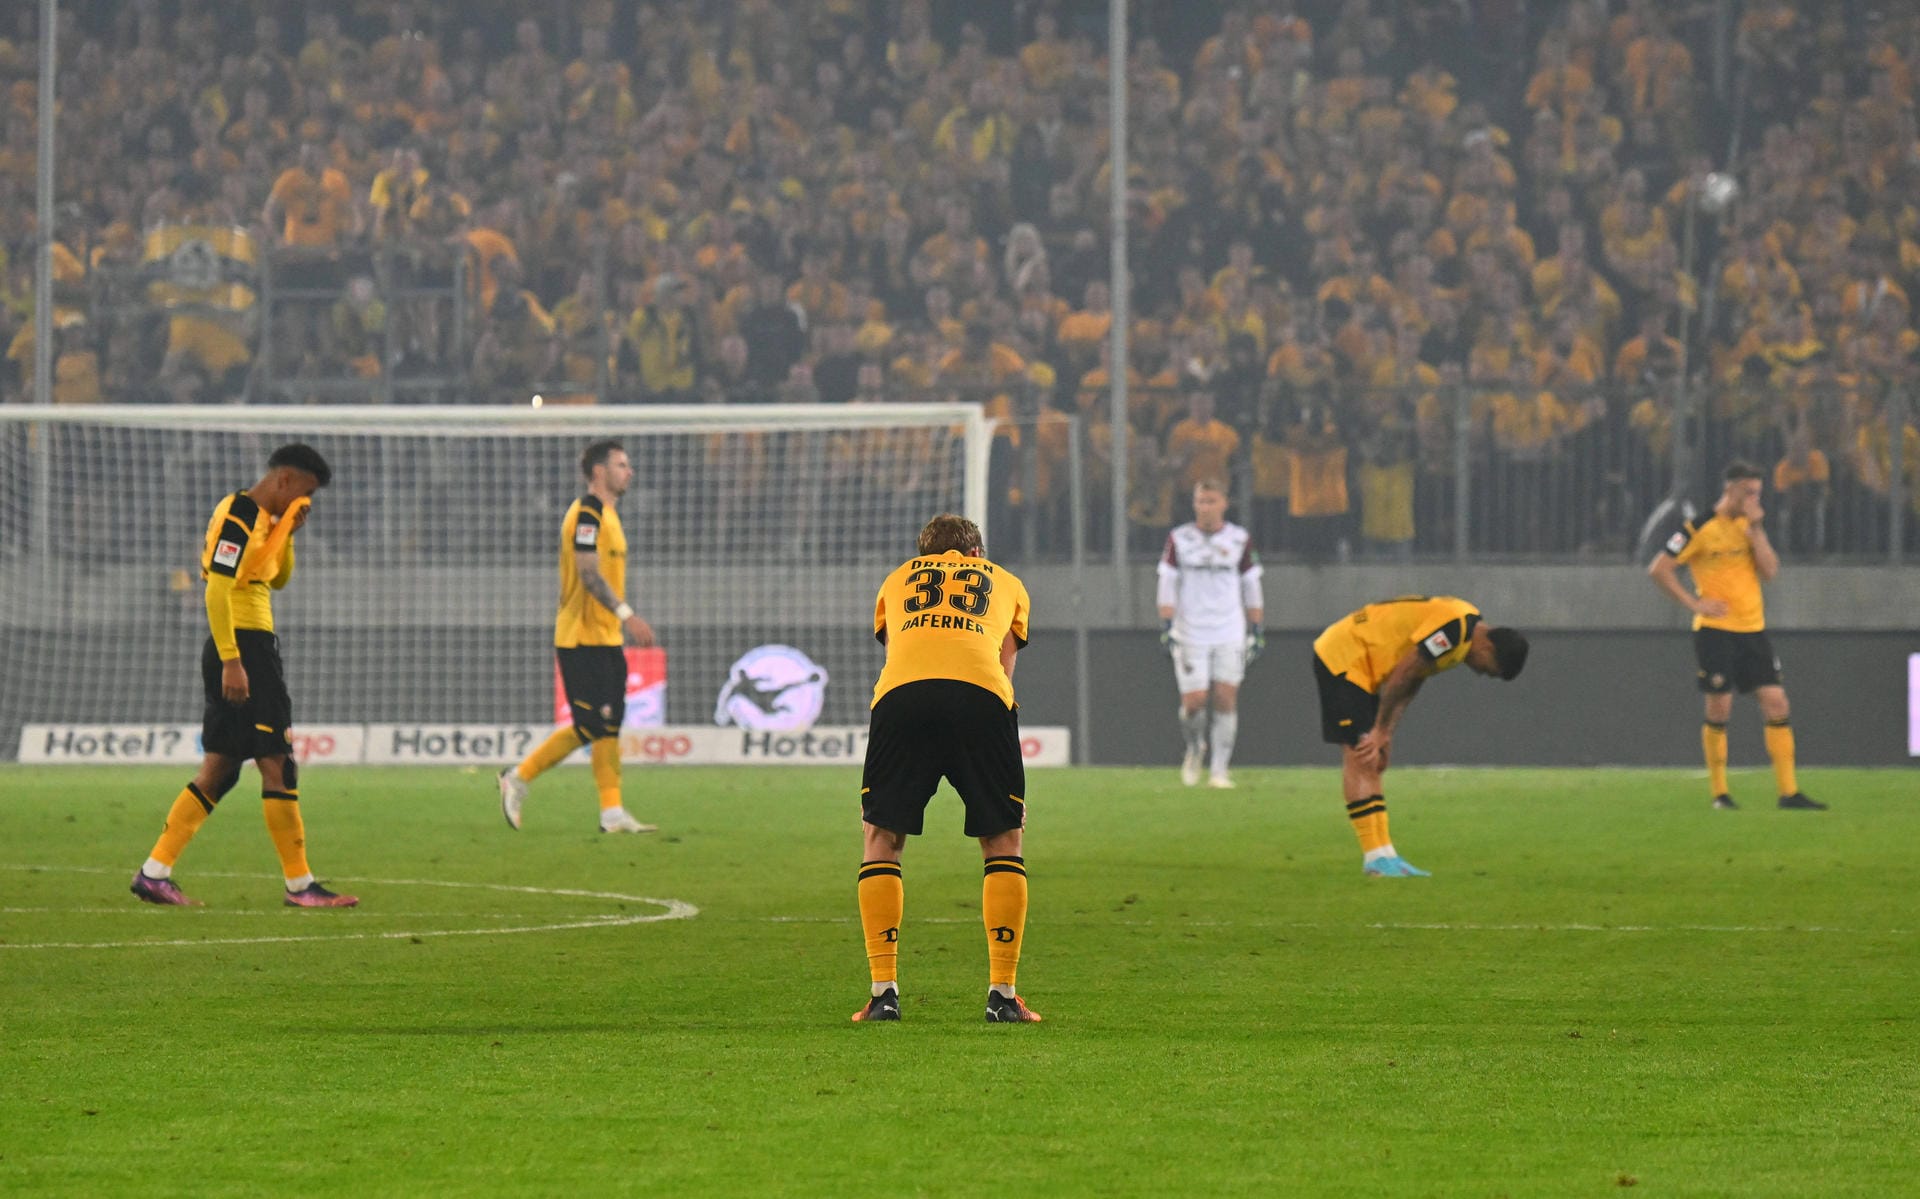 Während Dynamo Dresden die Enttäuschung aus dem Gesicht zu lesen war...